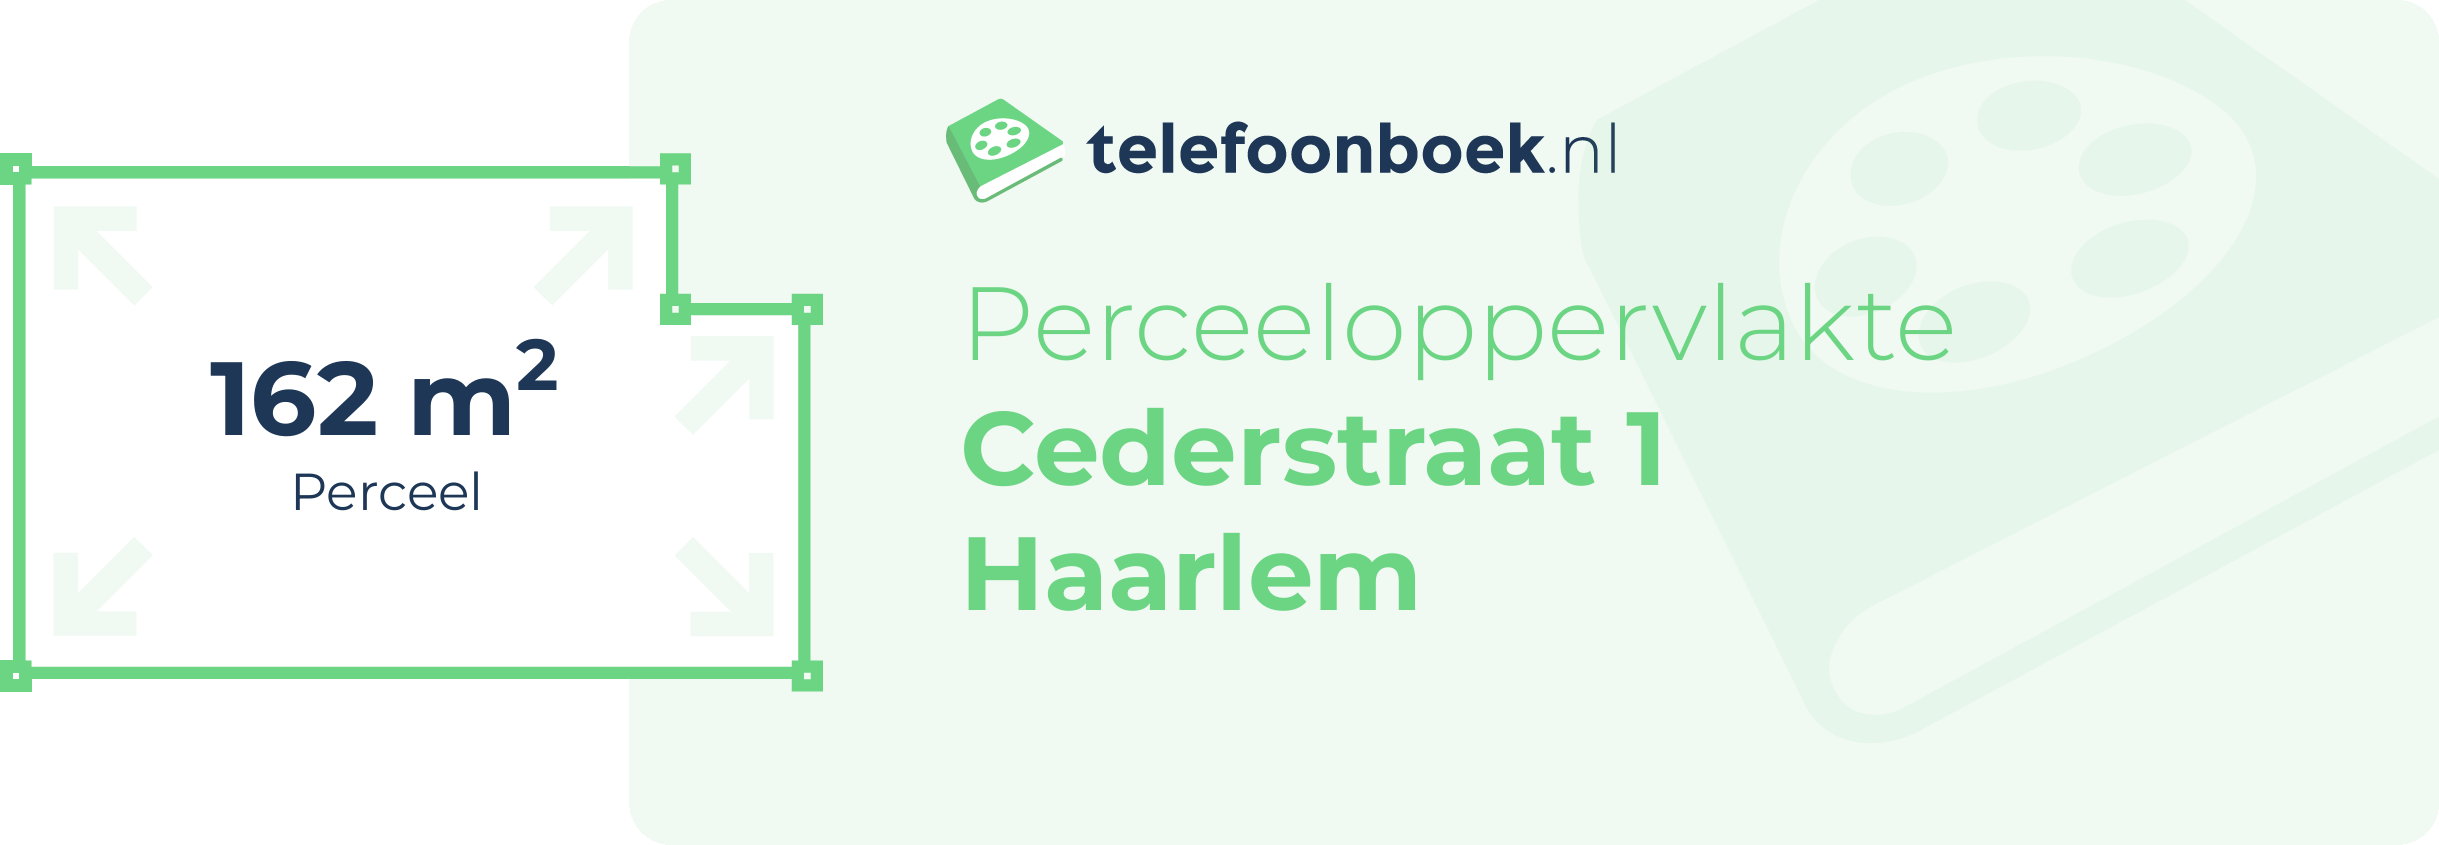 Perceeloppervlakte Cederstraat 1 Haarlem